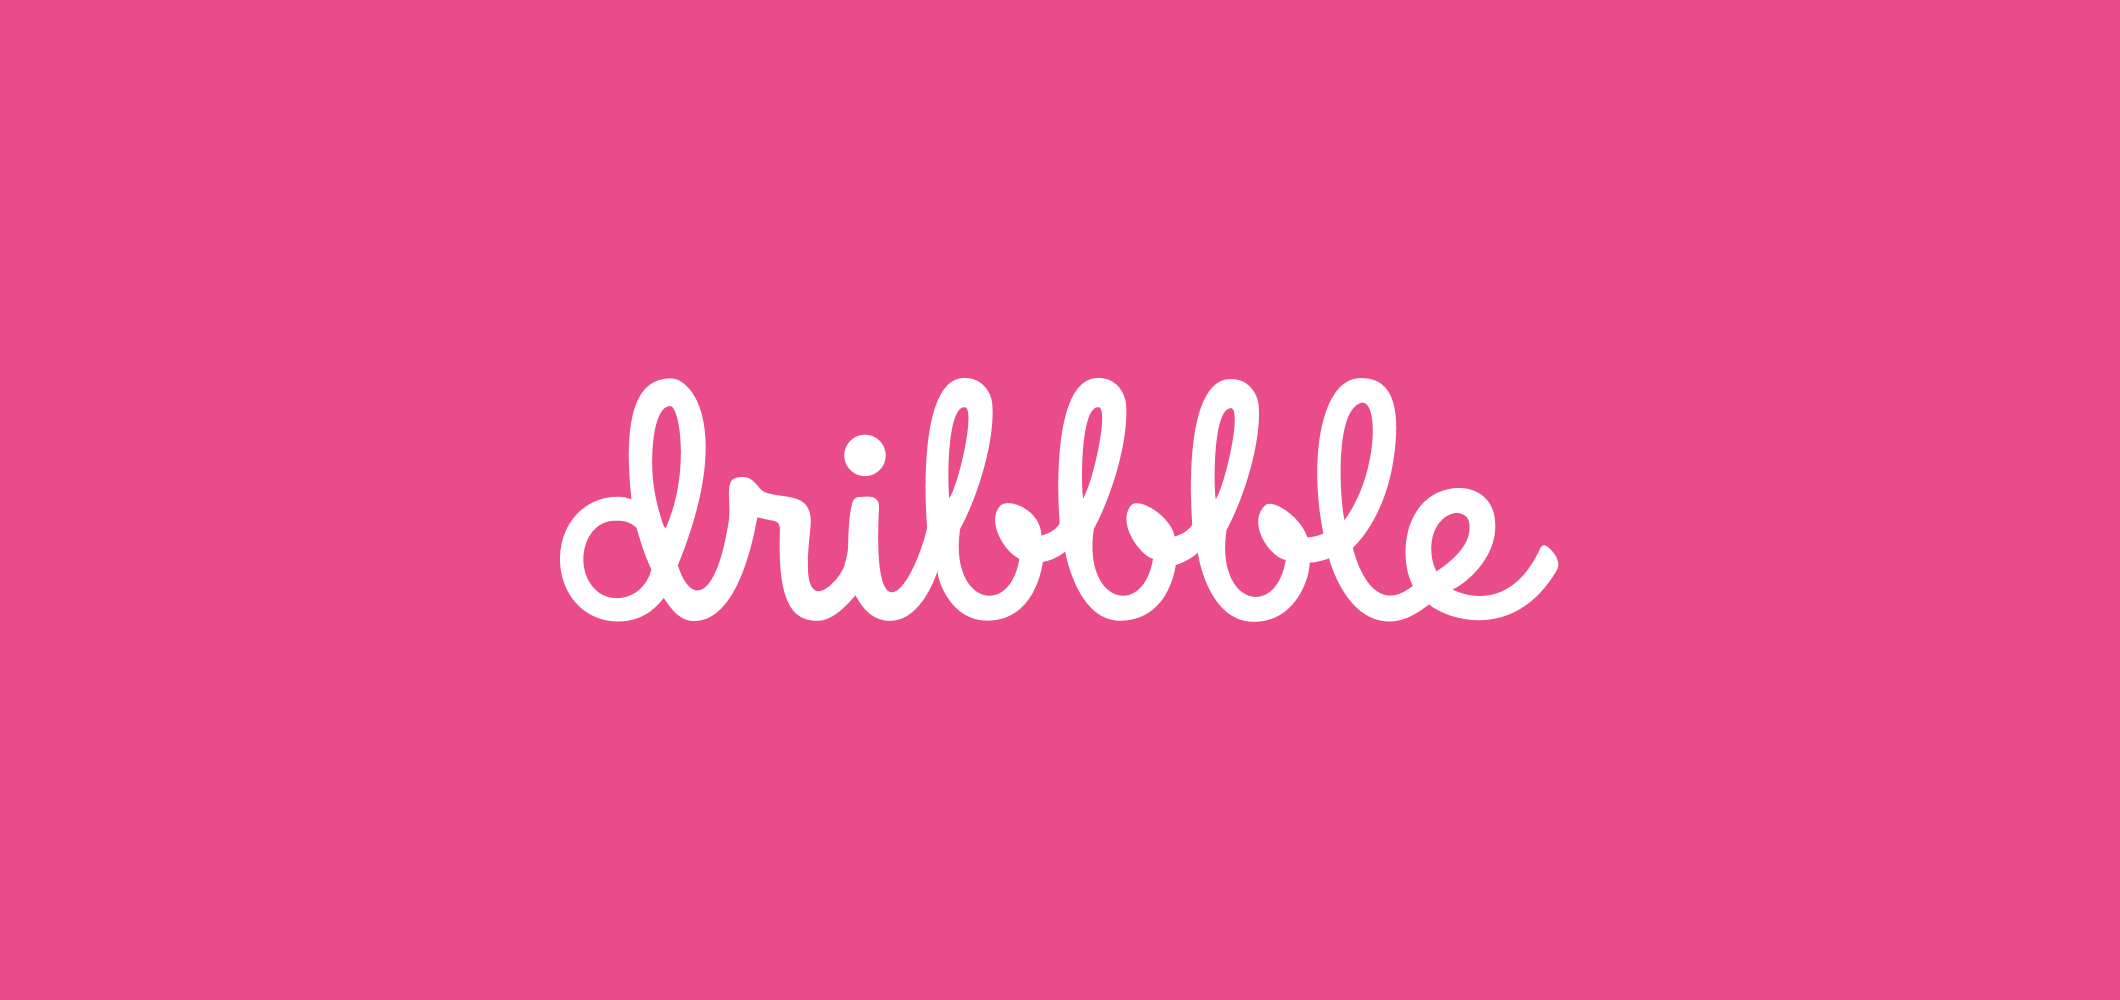 Dribbble Logo PNG - 179087